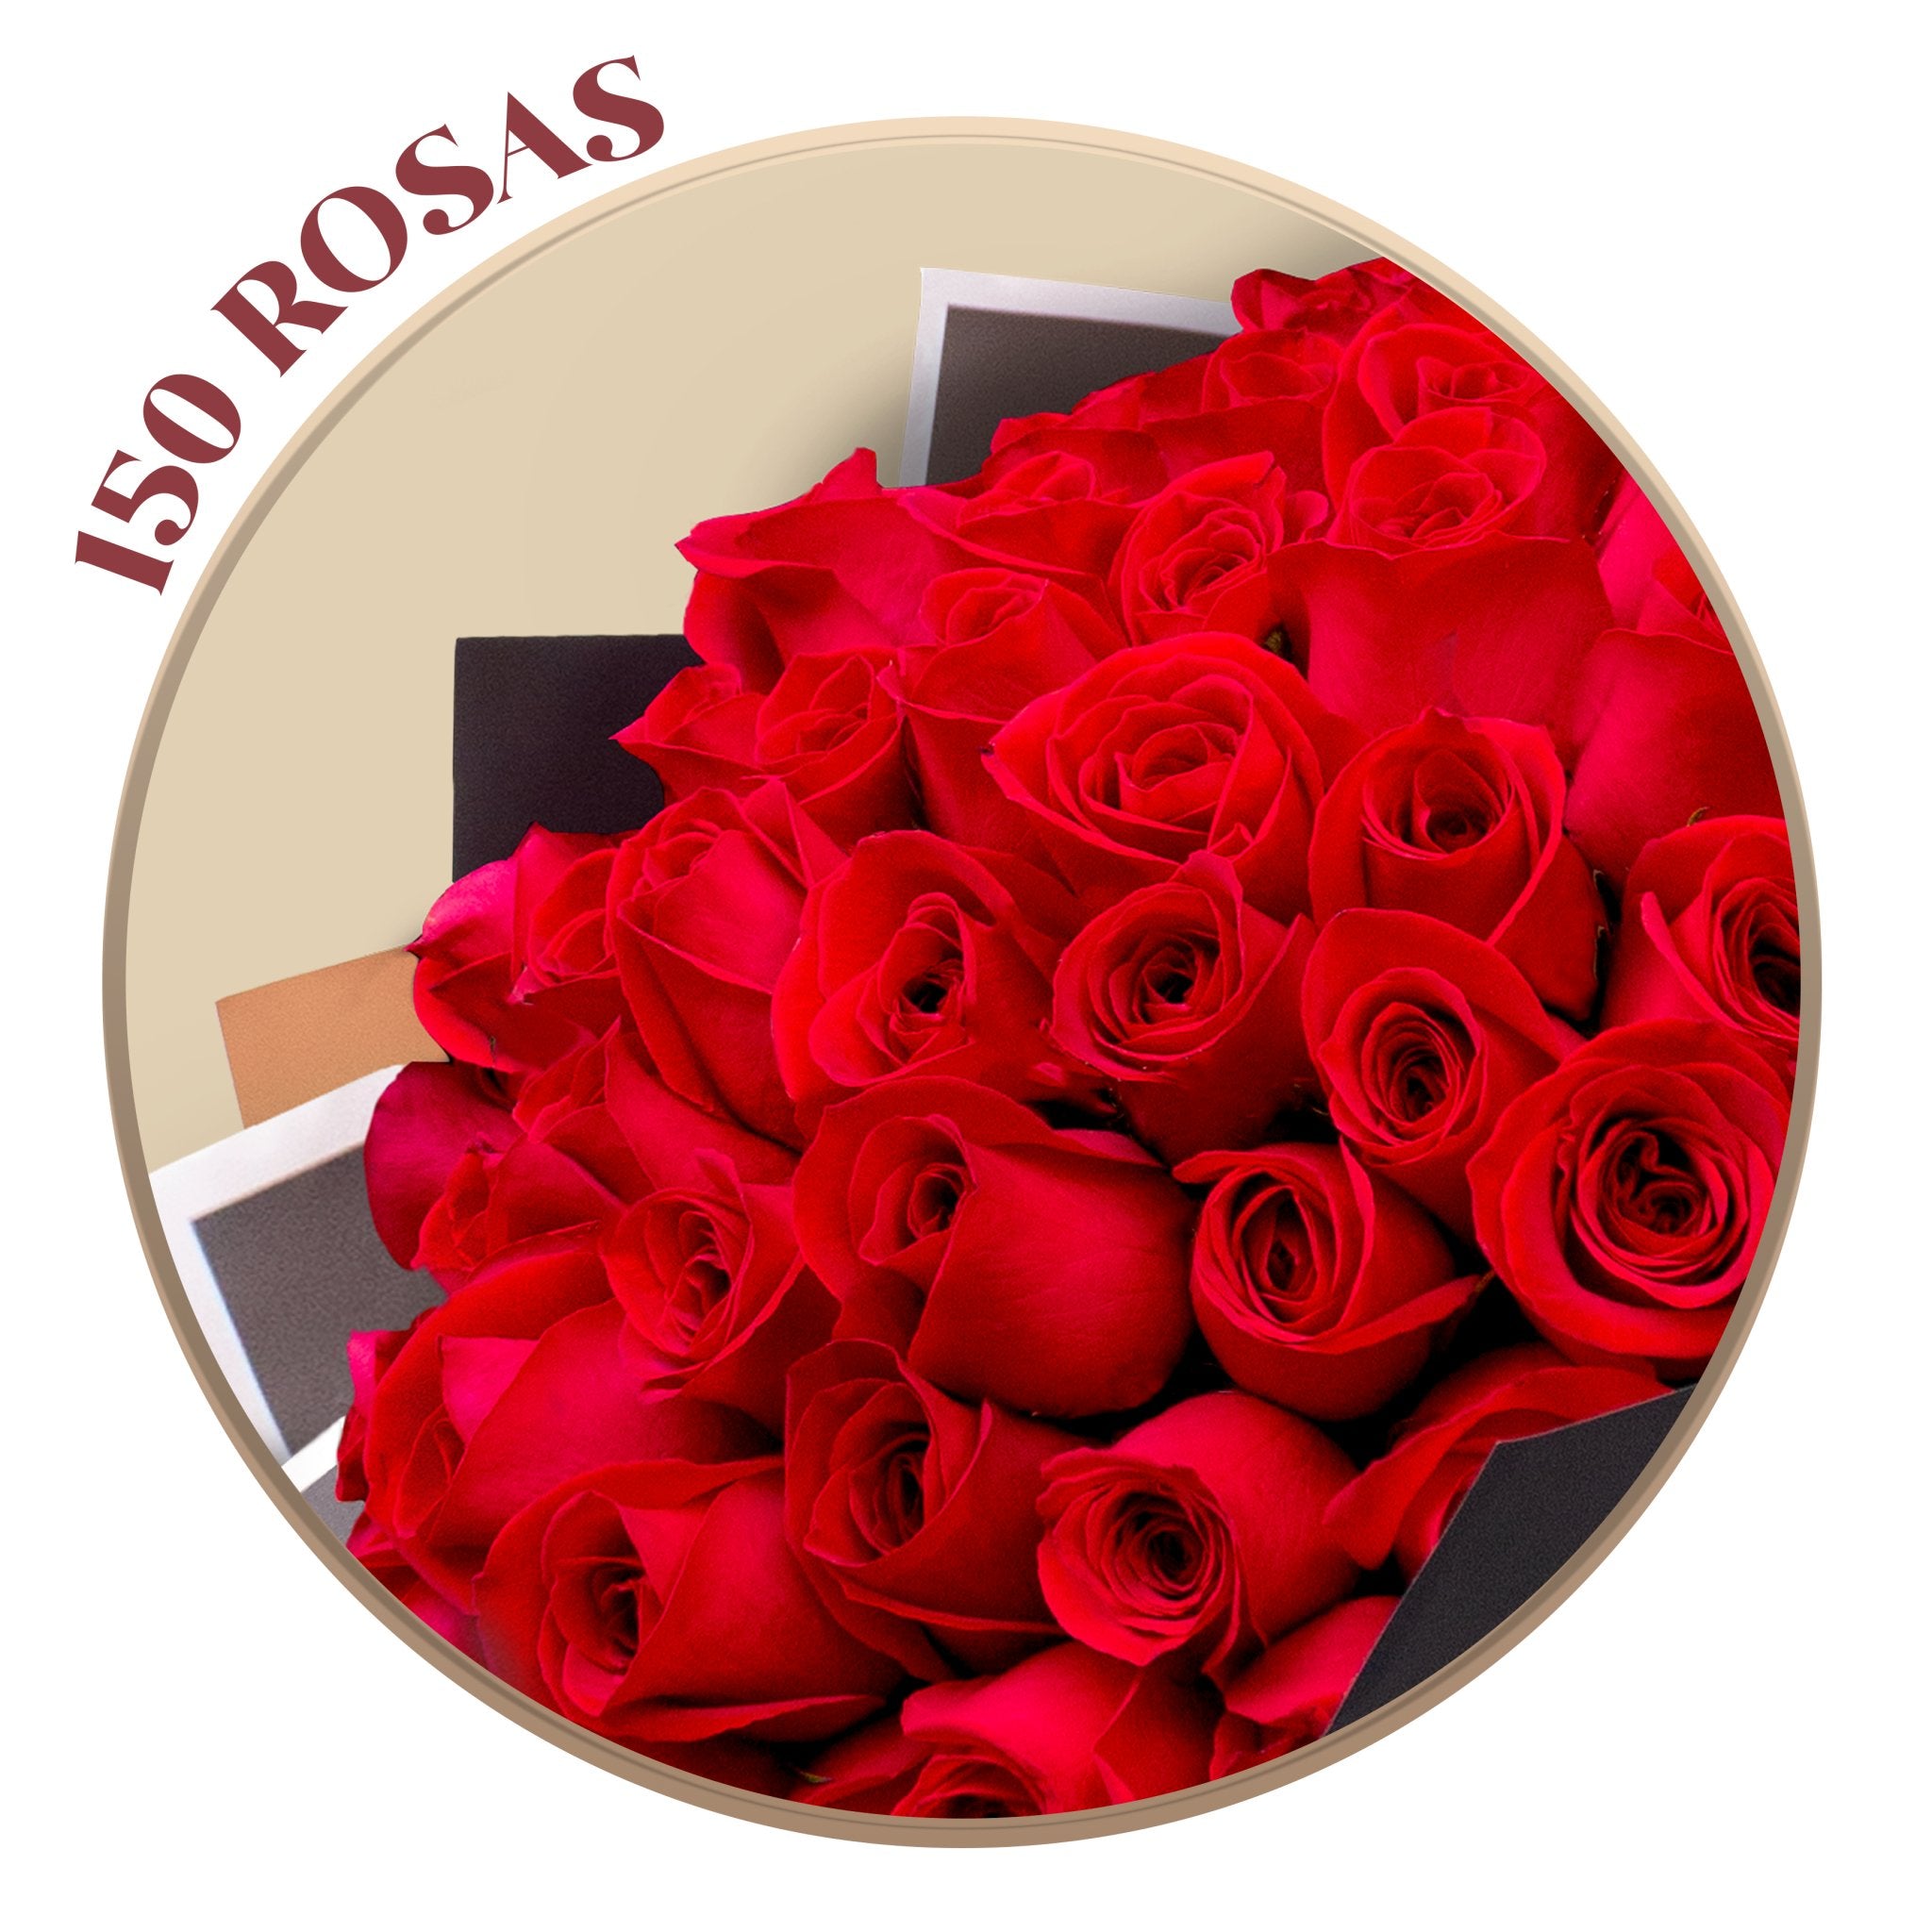 24, 50, 100, 150 o 500 Rosas Rojas en Ramillete